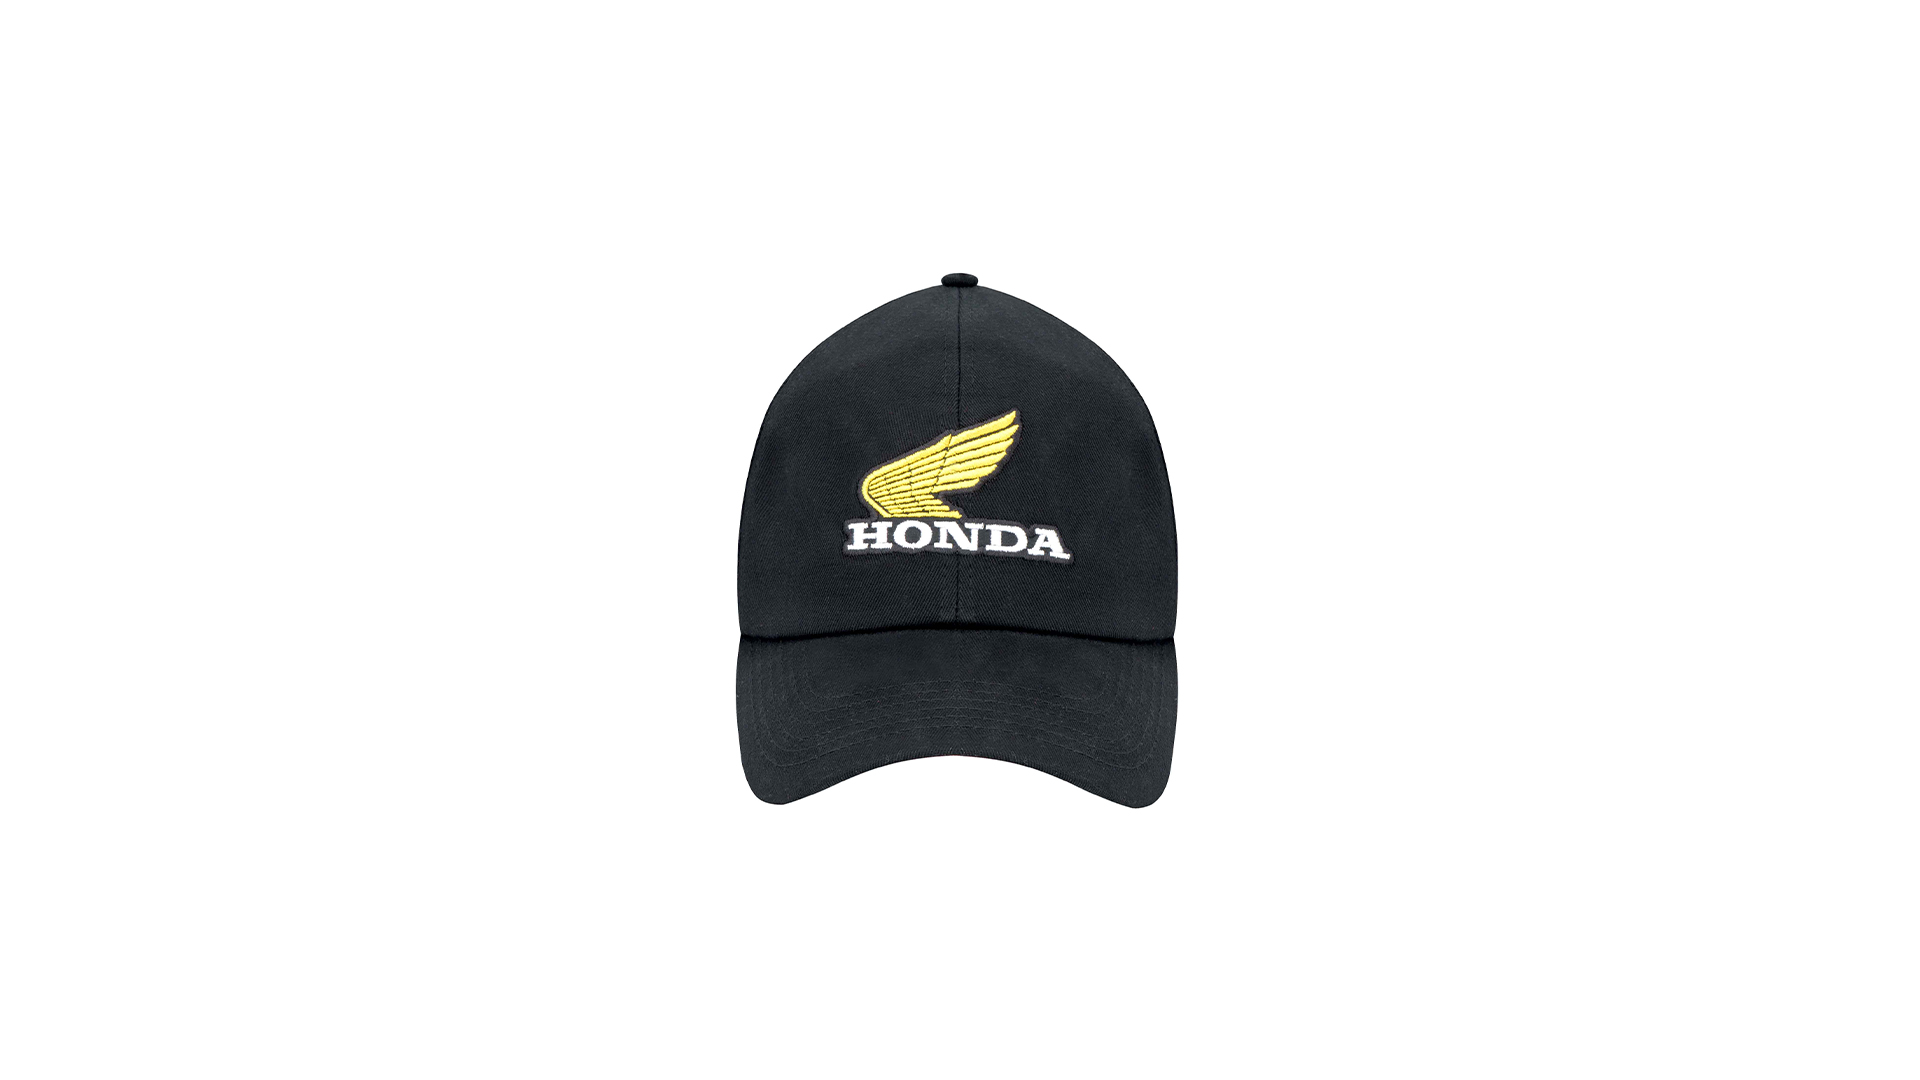 Boné Honda Asa Vintage Bordado